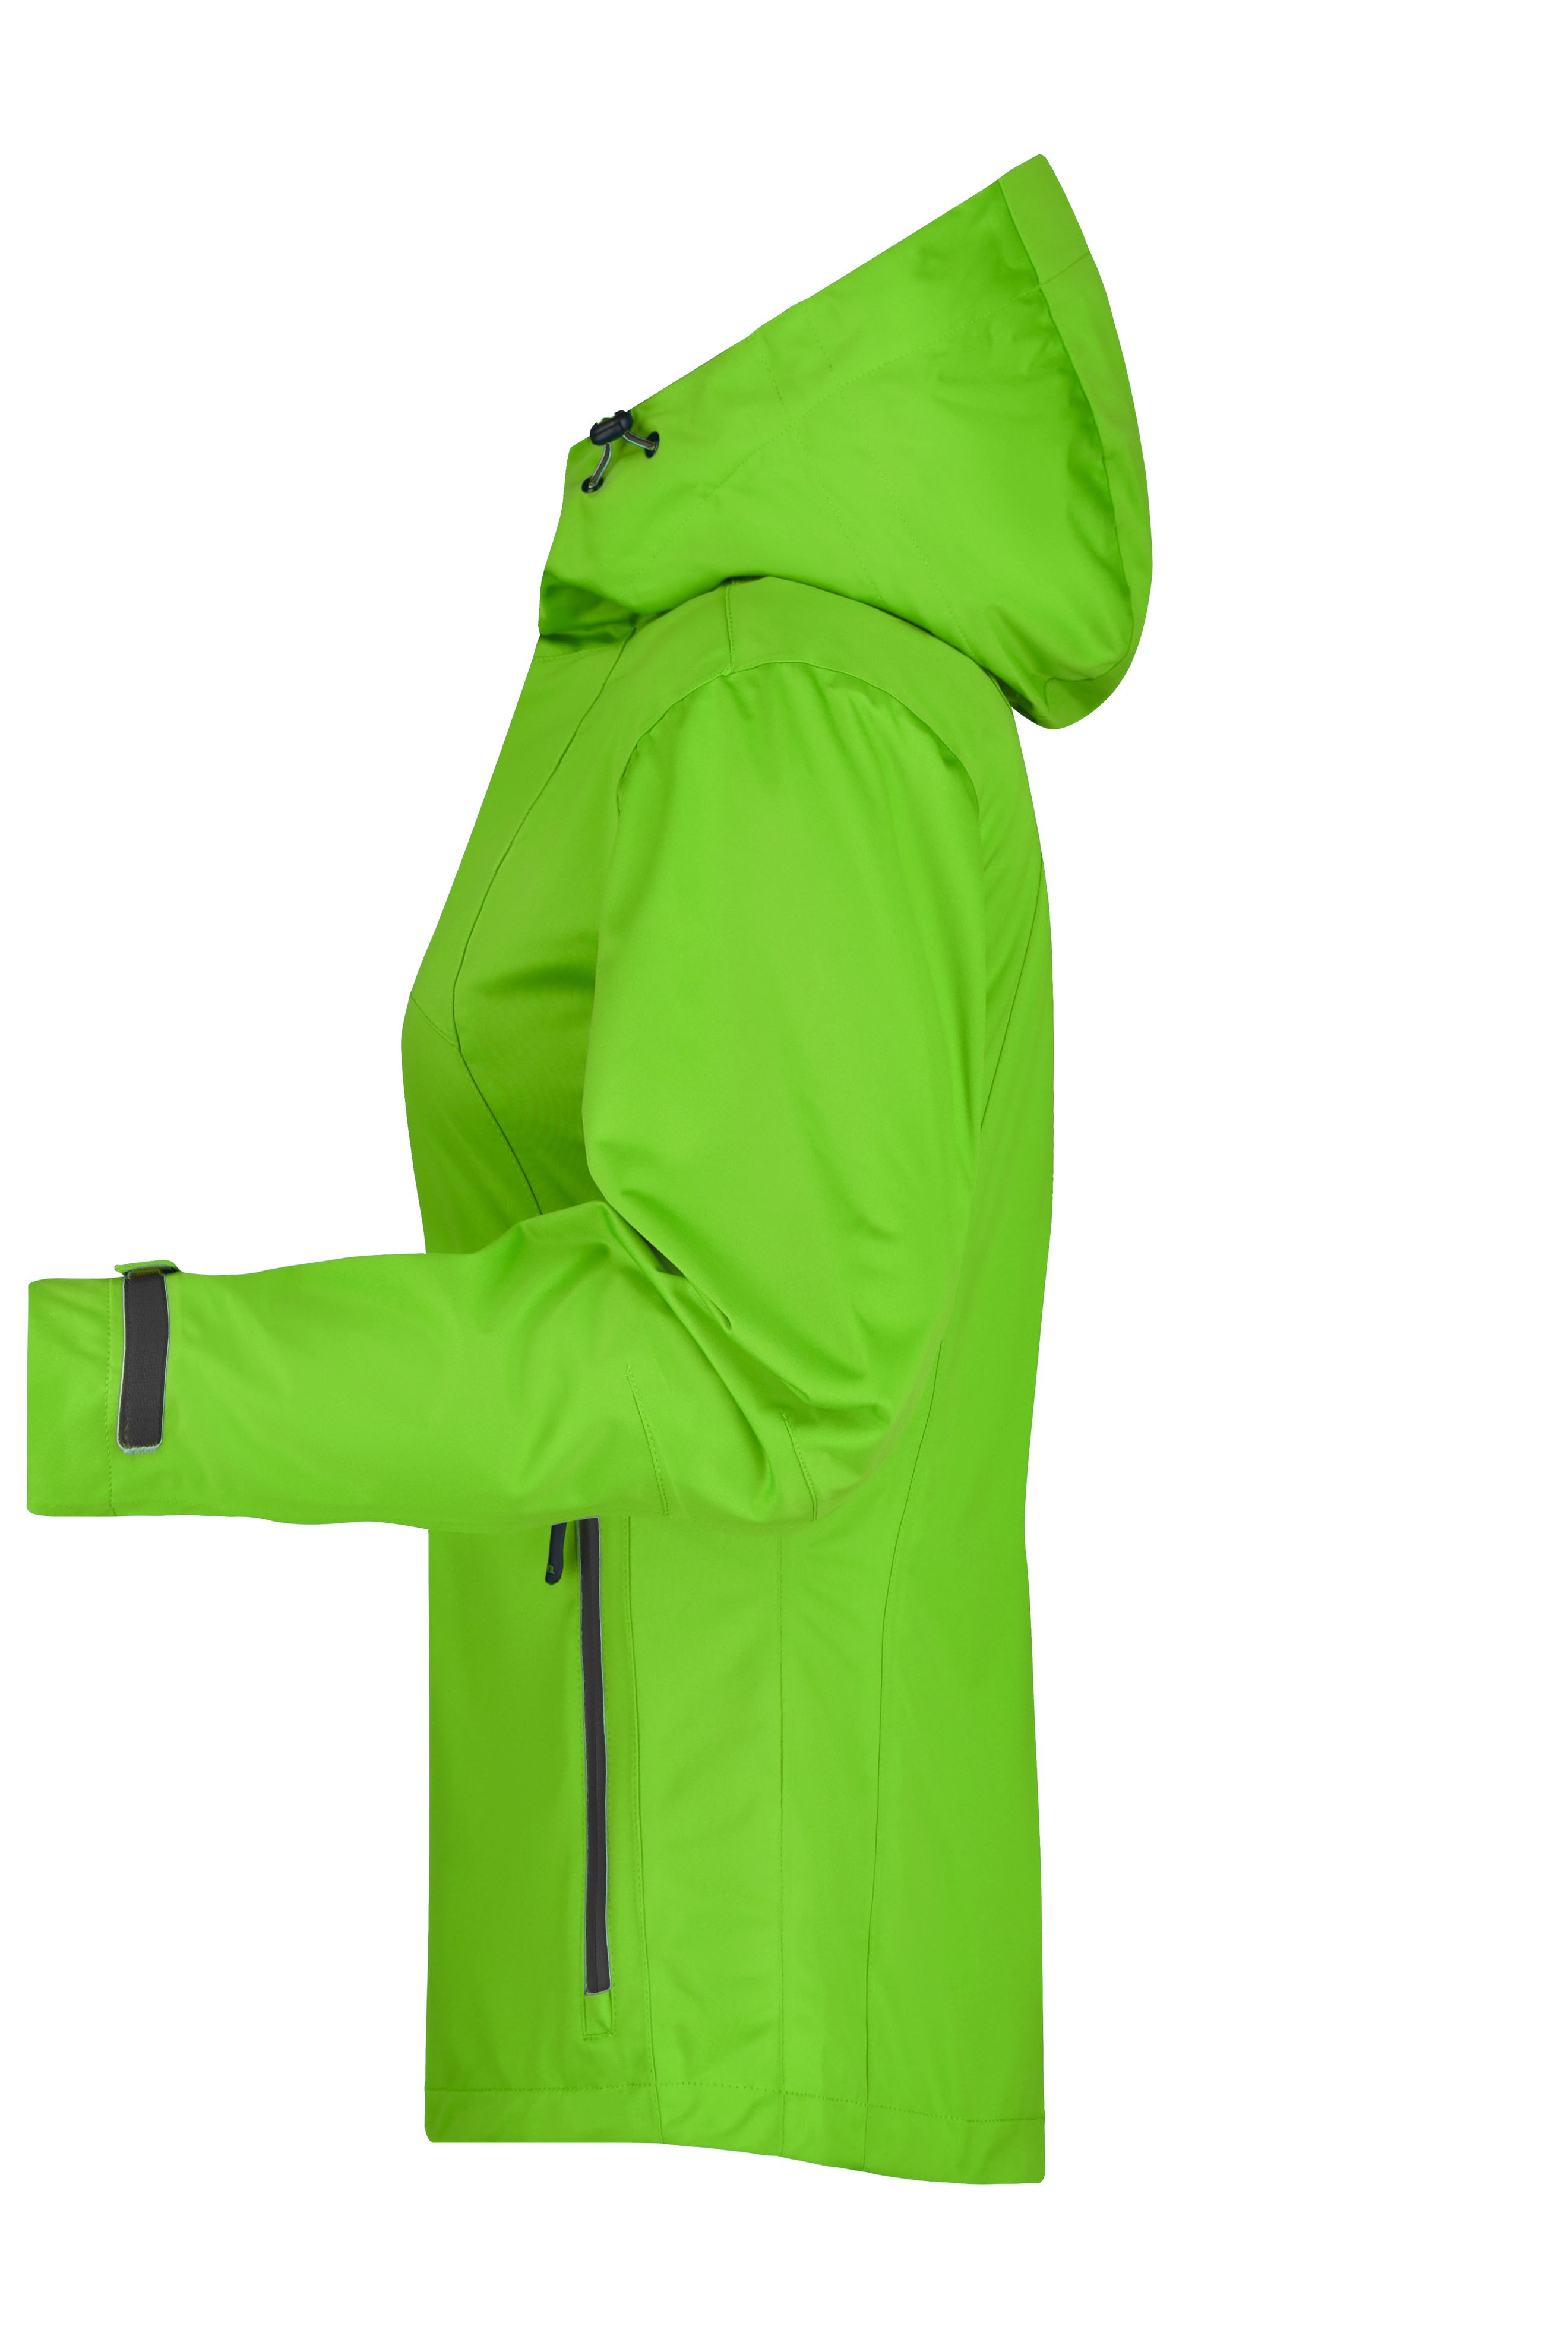 Ladies' Outdoor Jacket JN1097 Ultraleichte Softshell-Jacke für extreme Wetterbedingungen